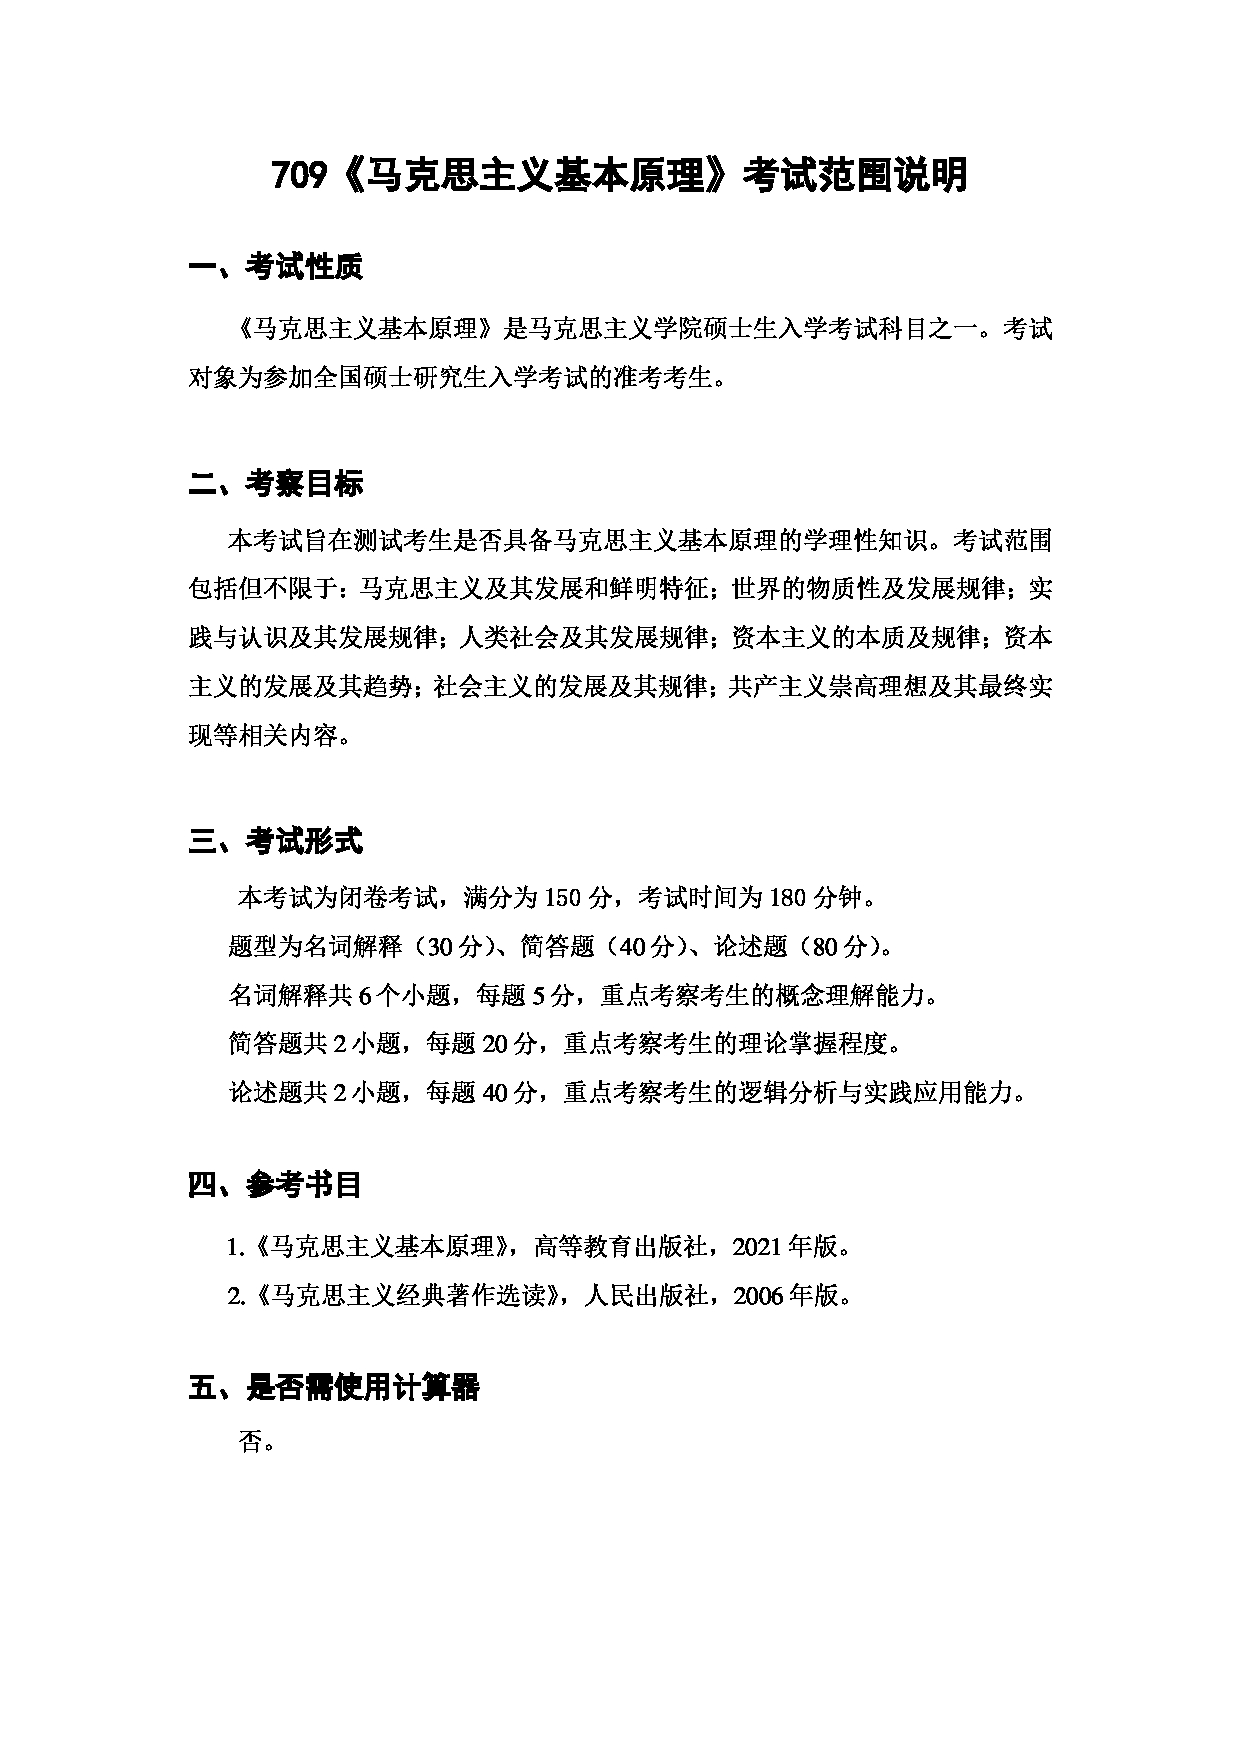 上海海洋大学2023年考研自命题科目 709《马克思主义基本原理》 考试范围第1页